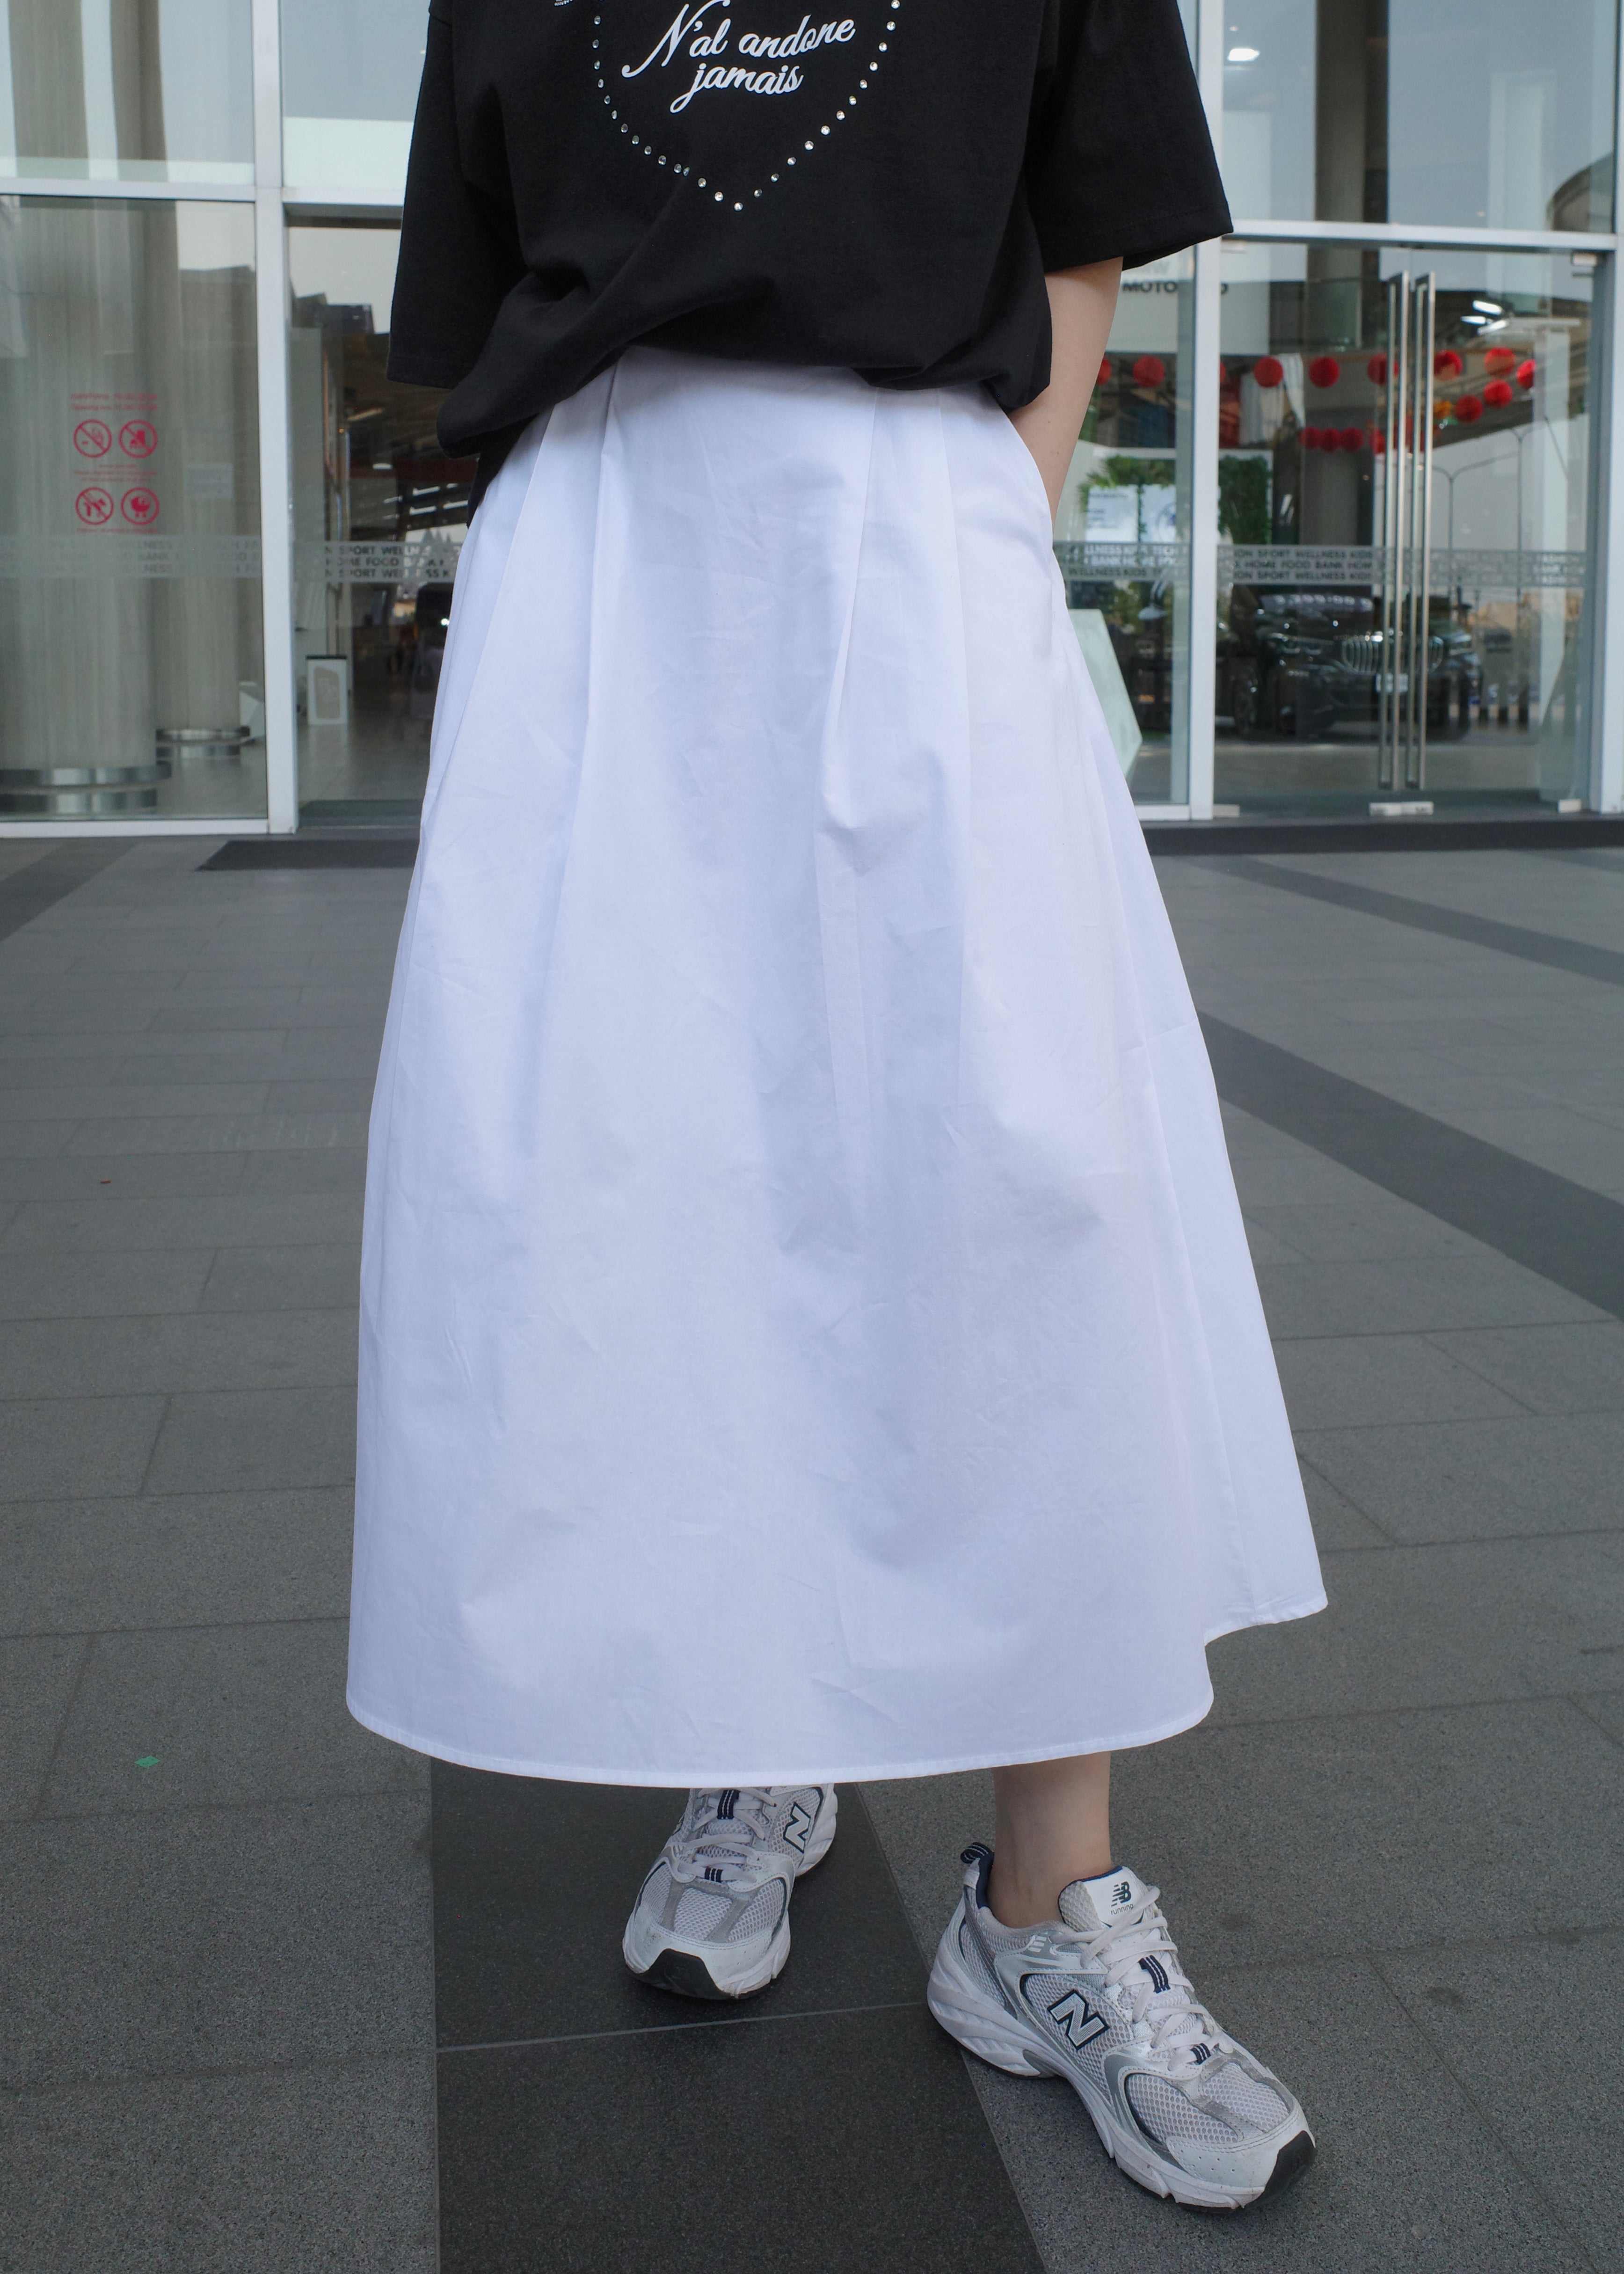 blooming skirt